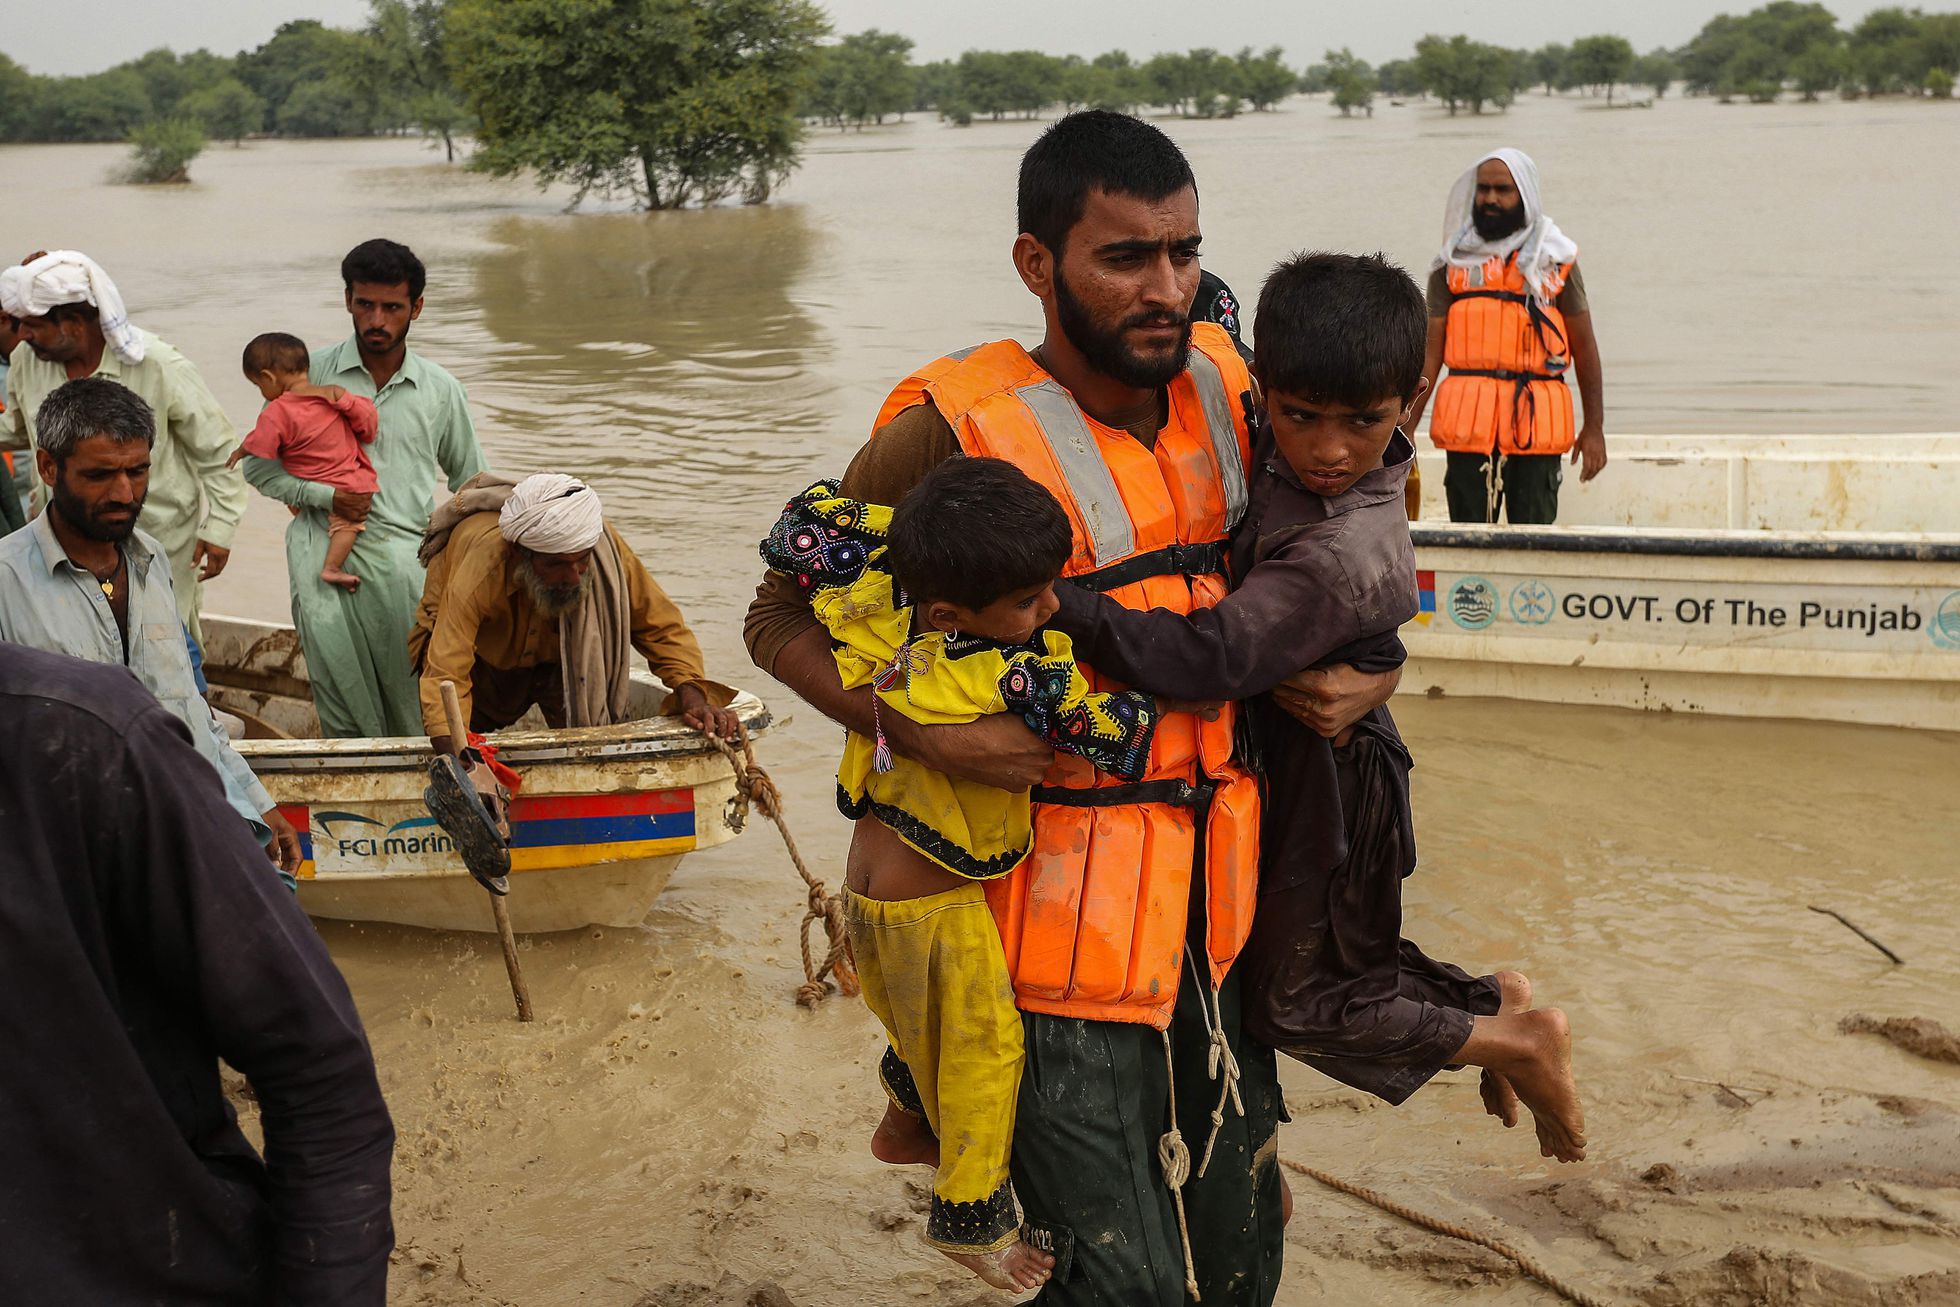 Equipo de rescate ayuda a evacuar residentes de provincias inundadas. - Foto Shahid Saeed Mirza/AFP 